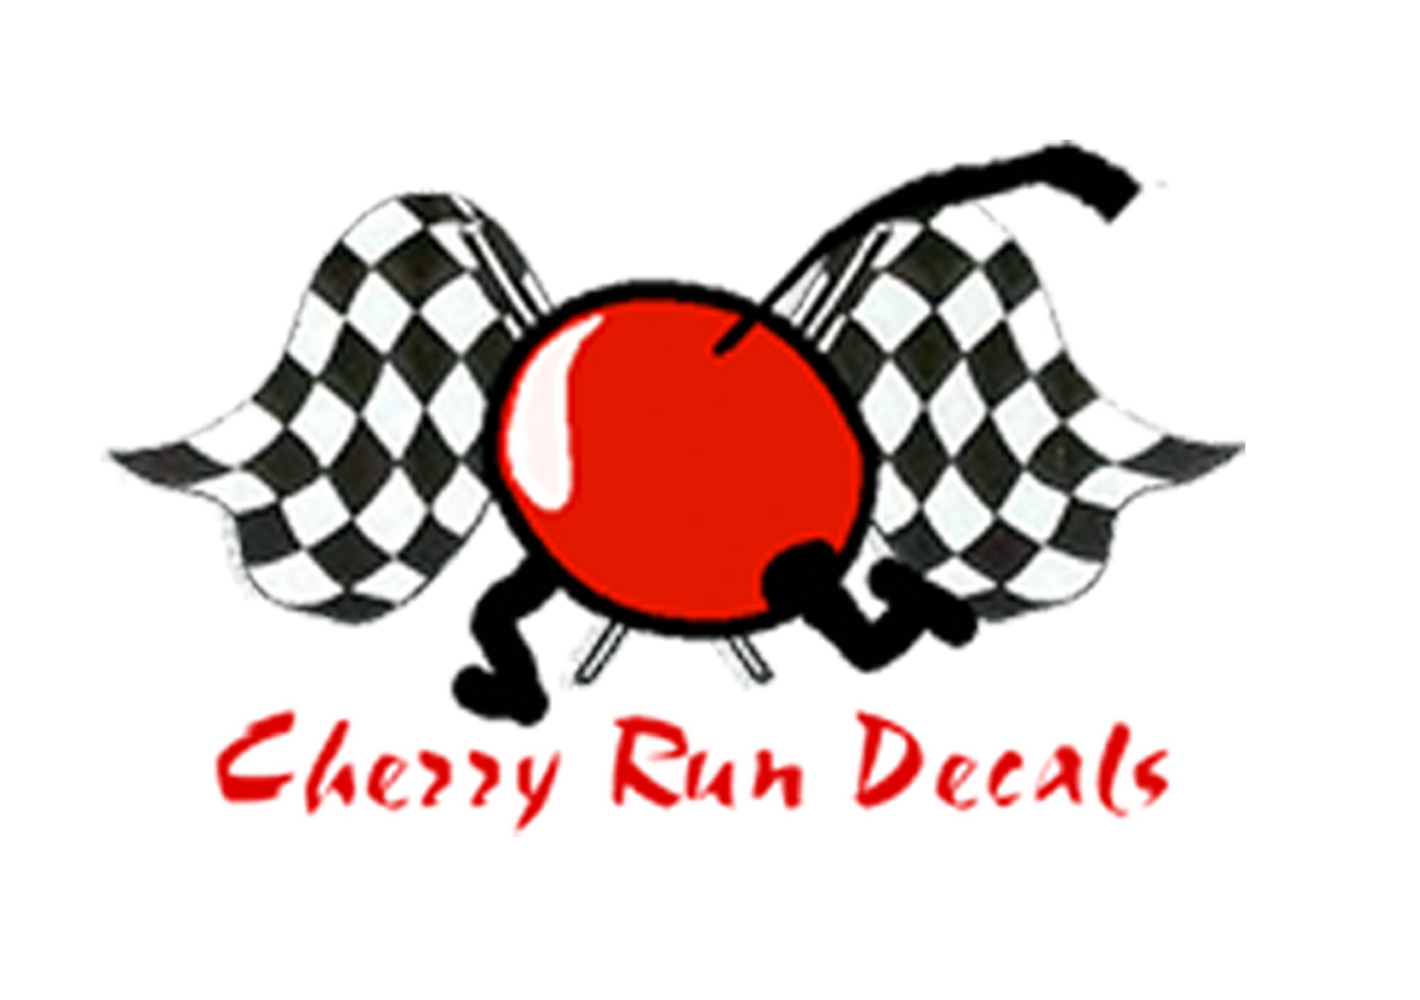 Cherry Run Decals